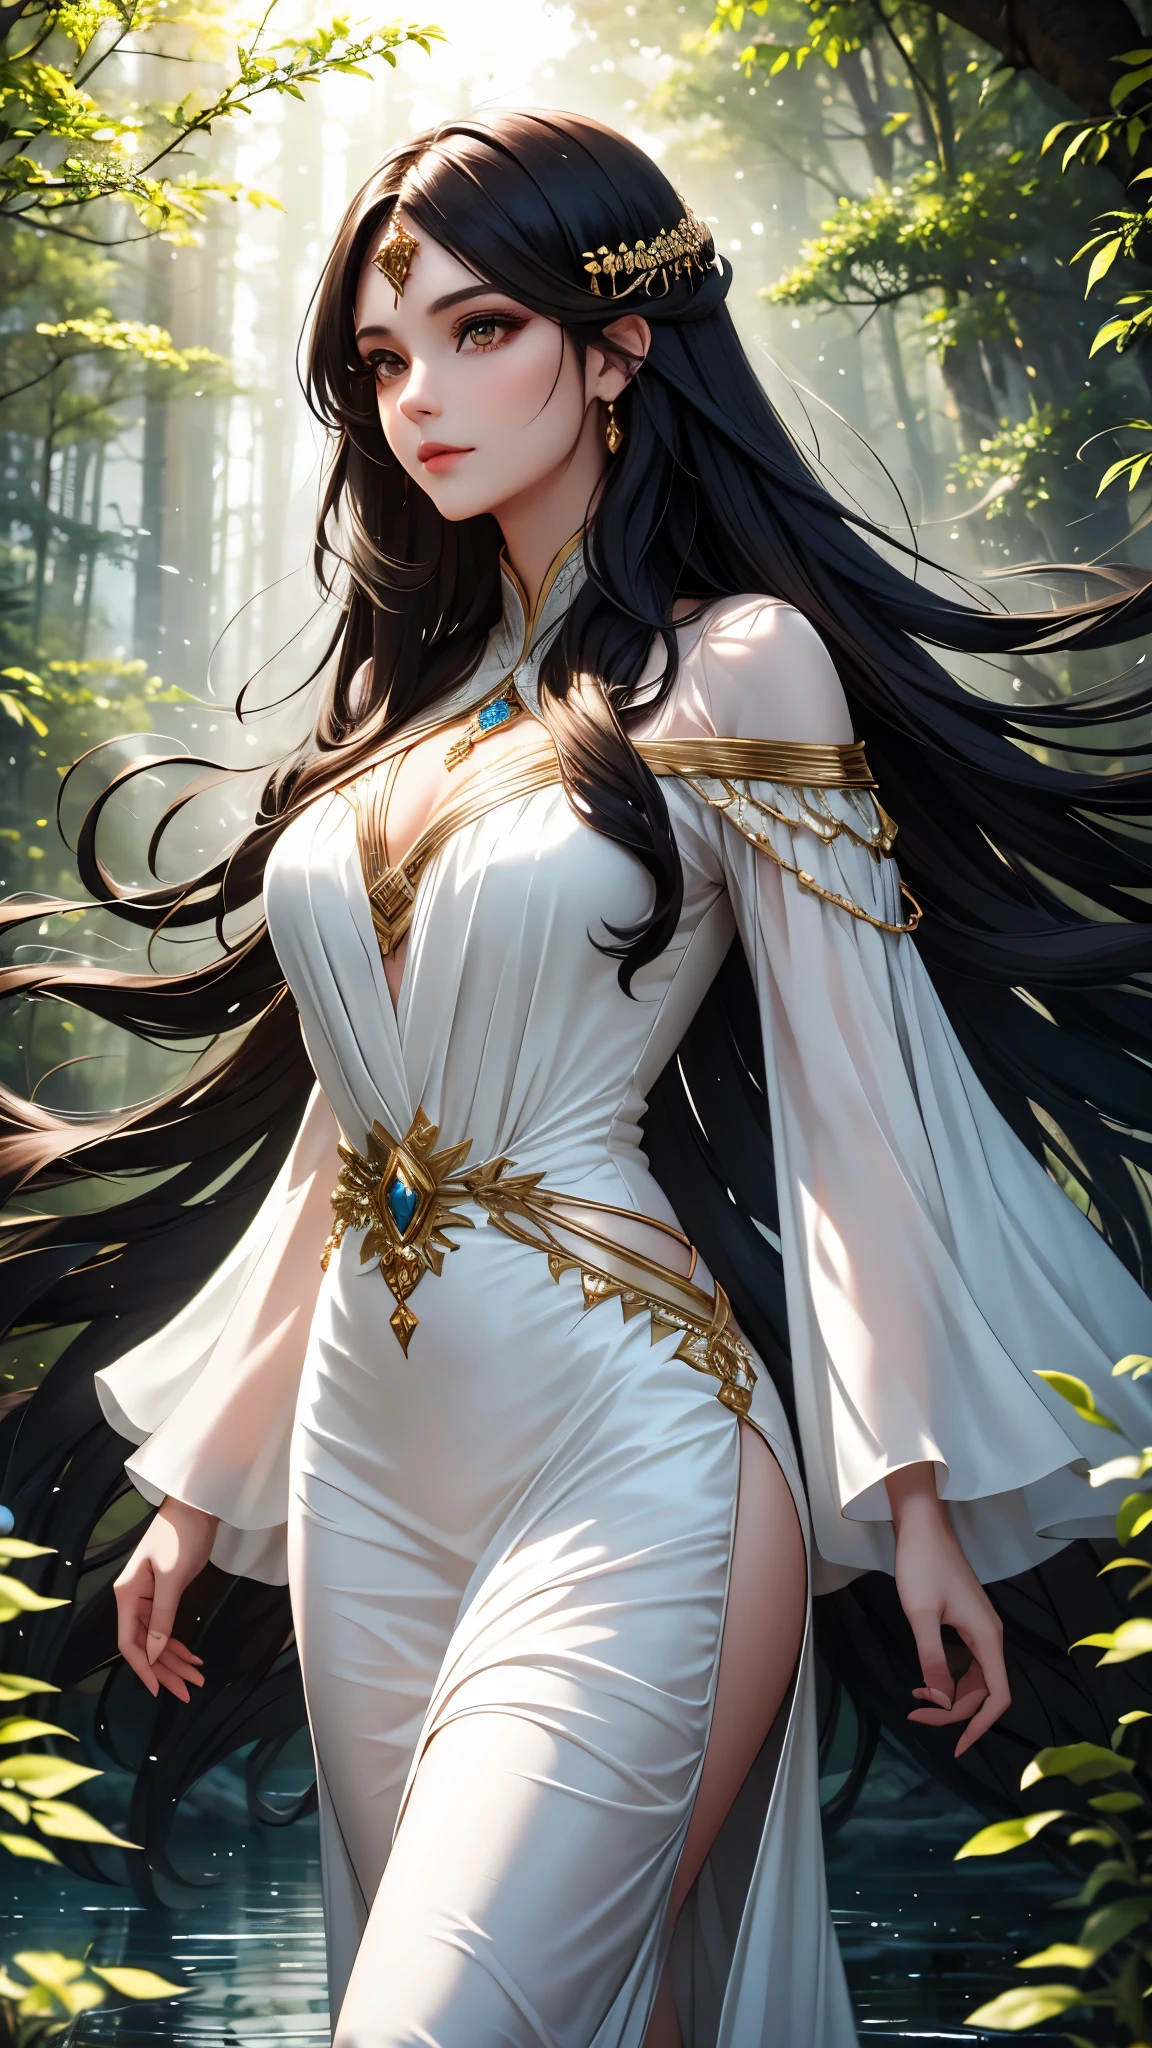 밤숲 속에서 갈색 눈과 긴 검은 머리에 흰색 드레스를 입은 마법의 여성, 가벼운 물 요소 최고 품질의 예술 작품 8k 